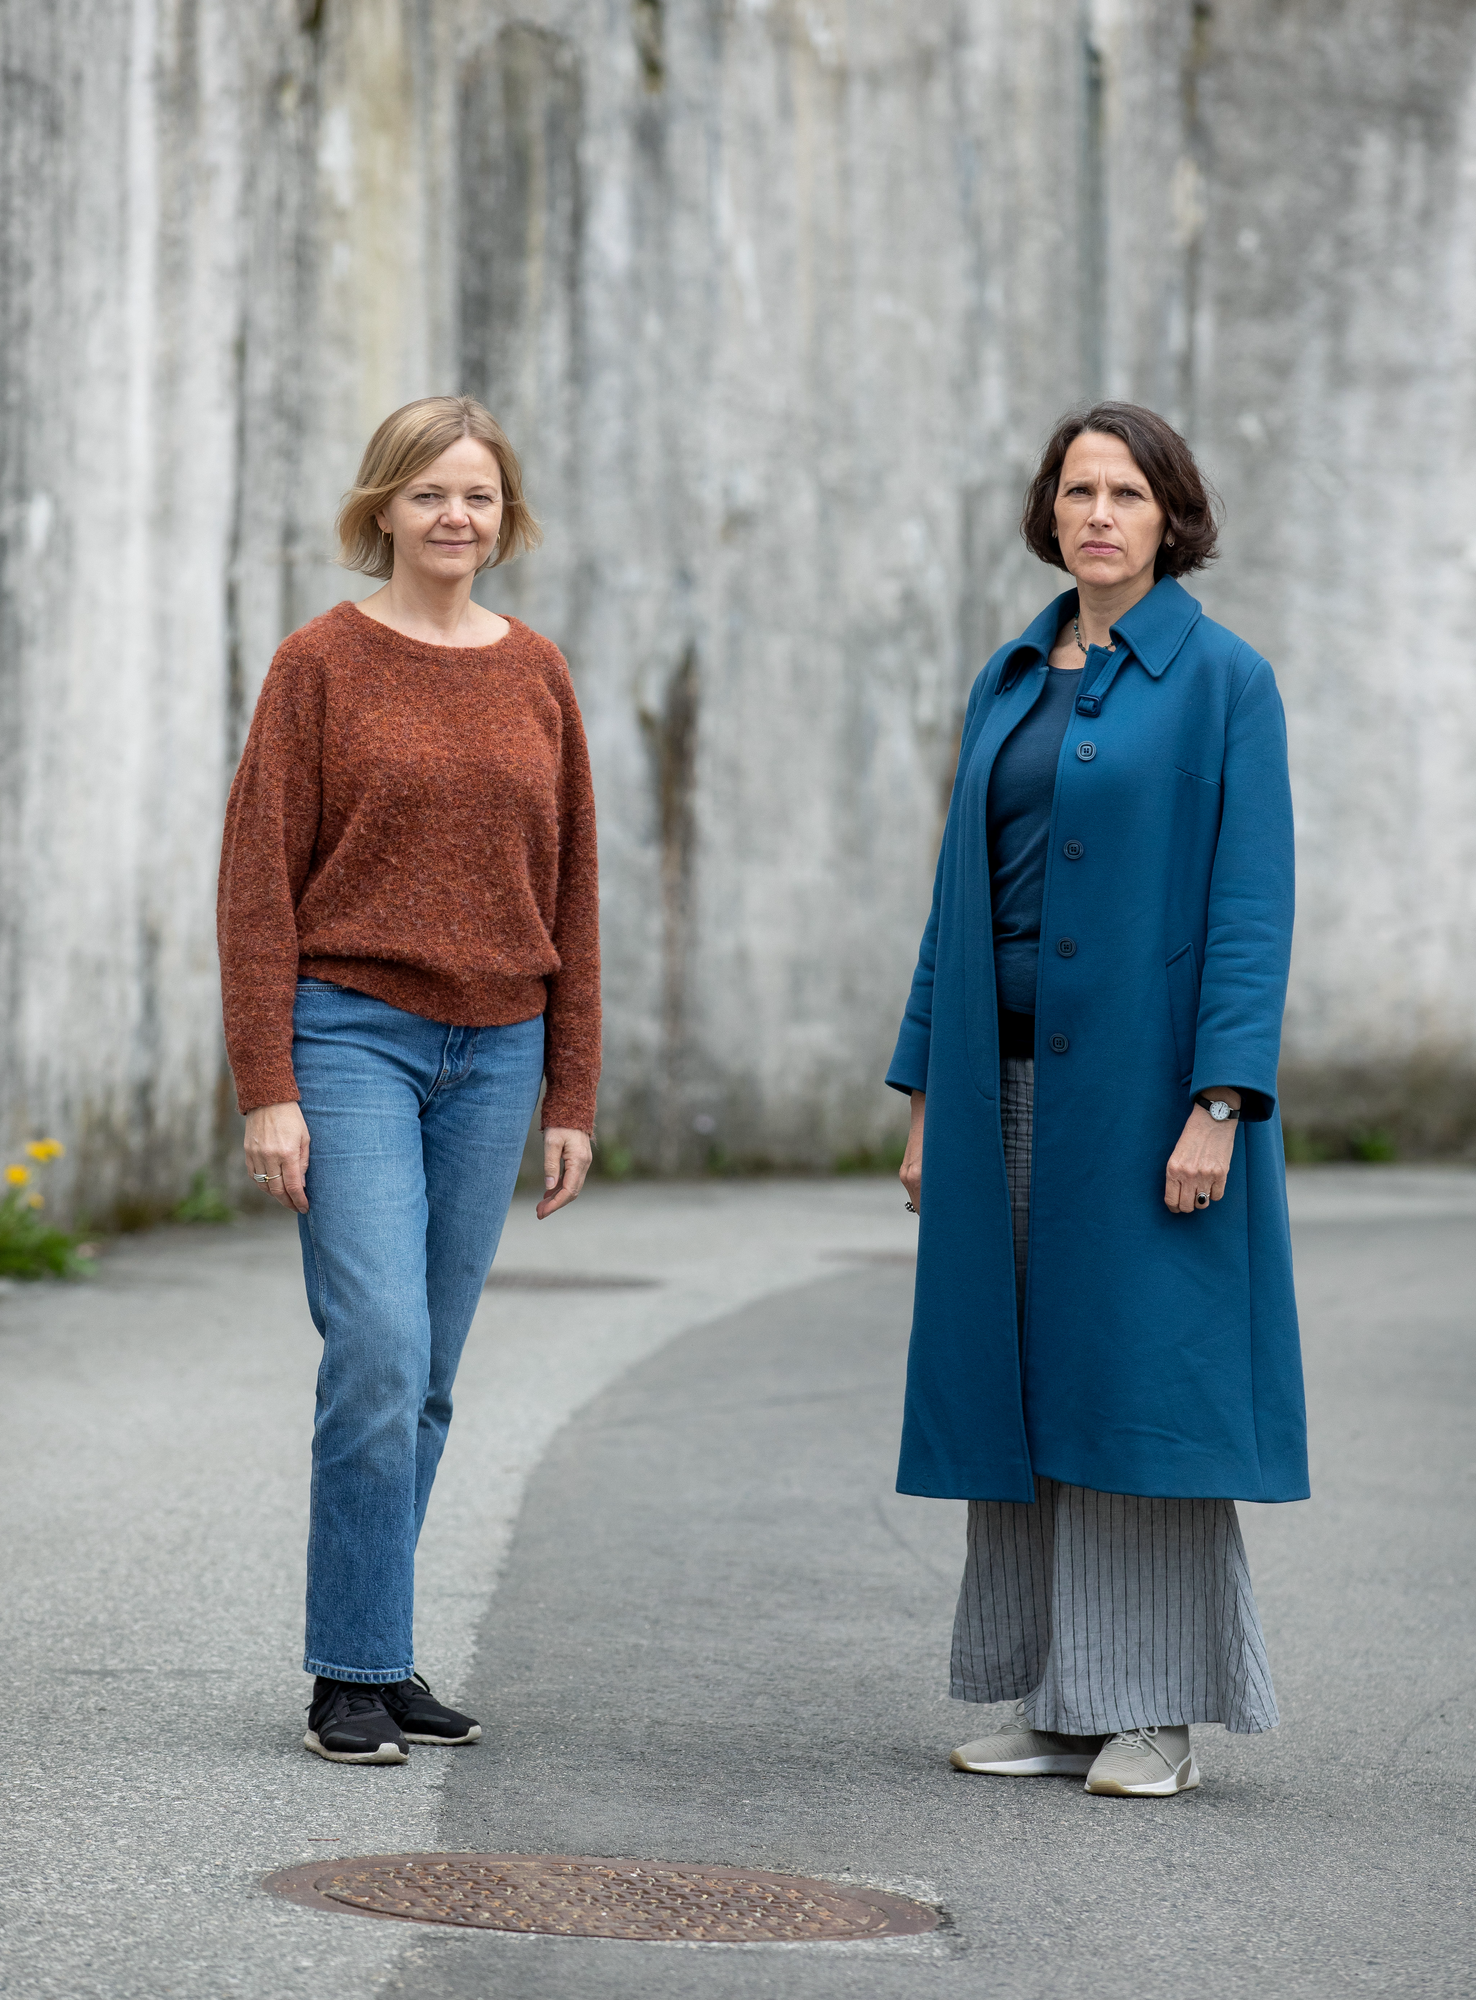 Helfigurportrett av Kjersti Sandvik (til venstre) og Grethe Fatima Syéd (til høyre) utendørs mot grå betongvegg.